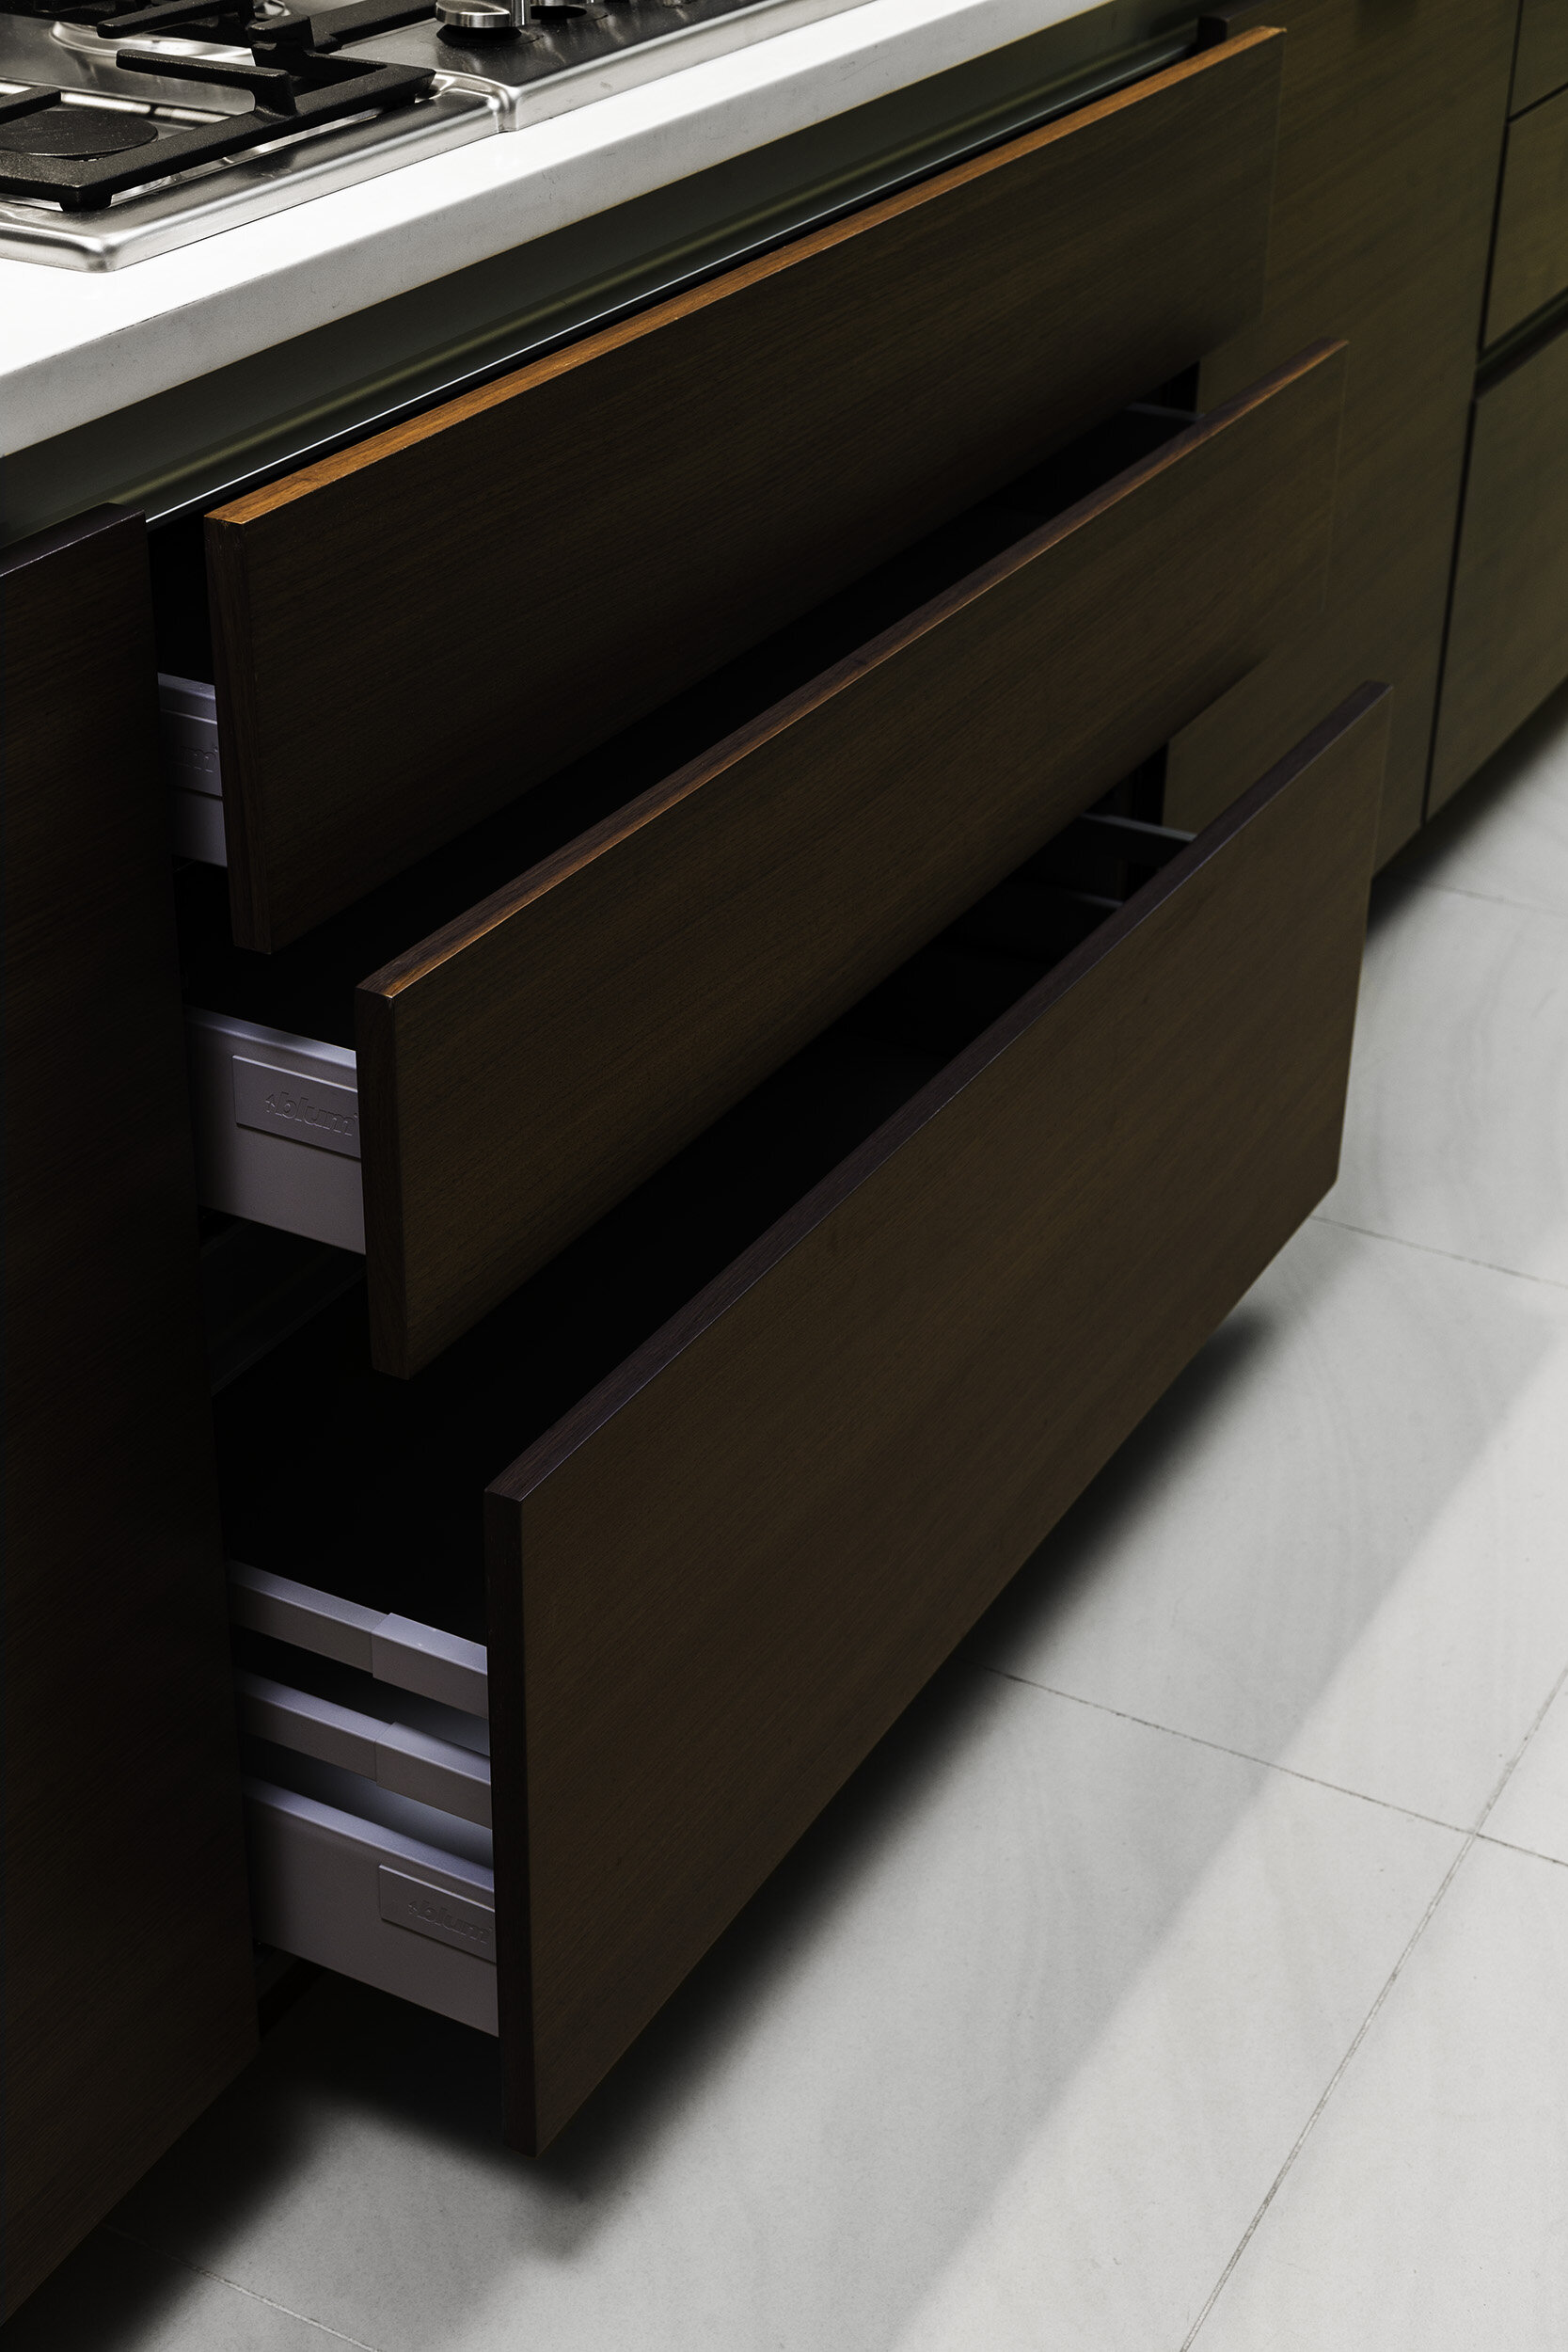 spectra-kitchen-drawers-2.jpg